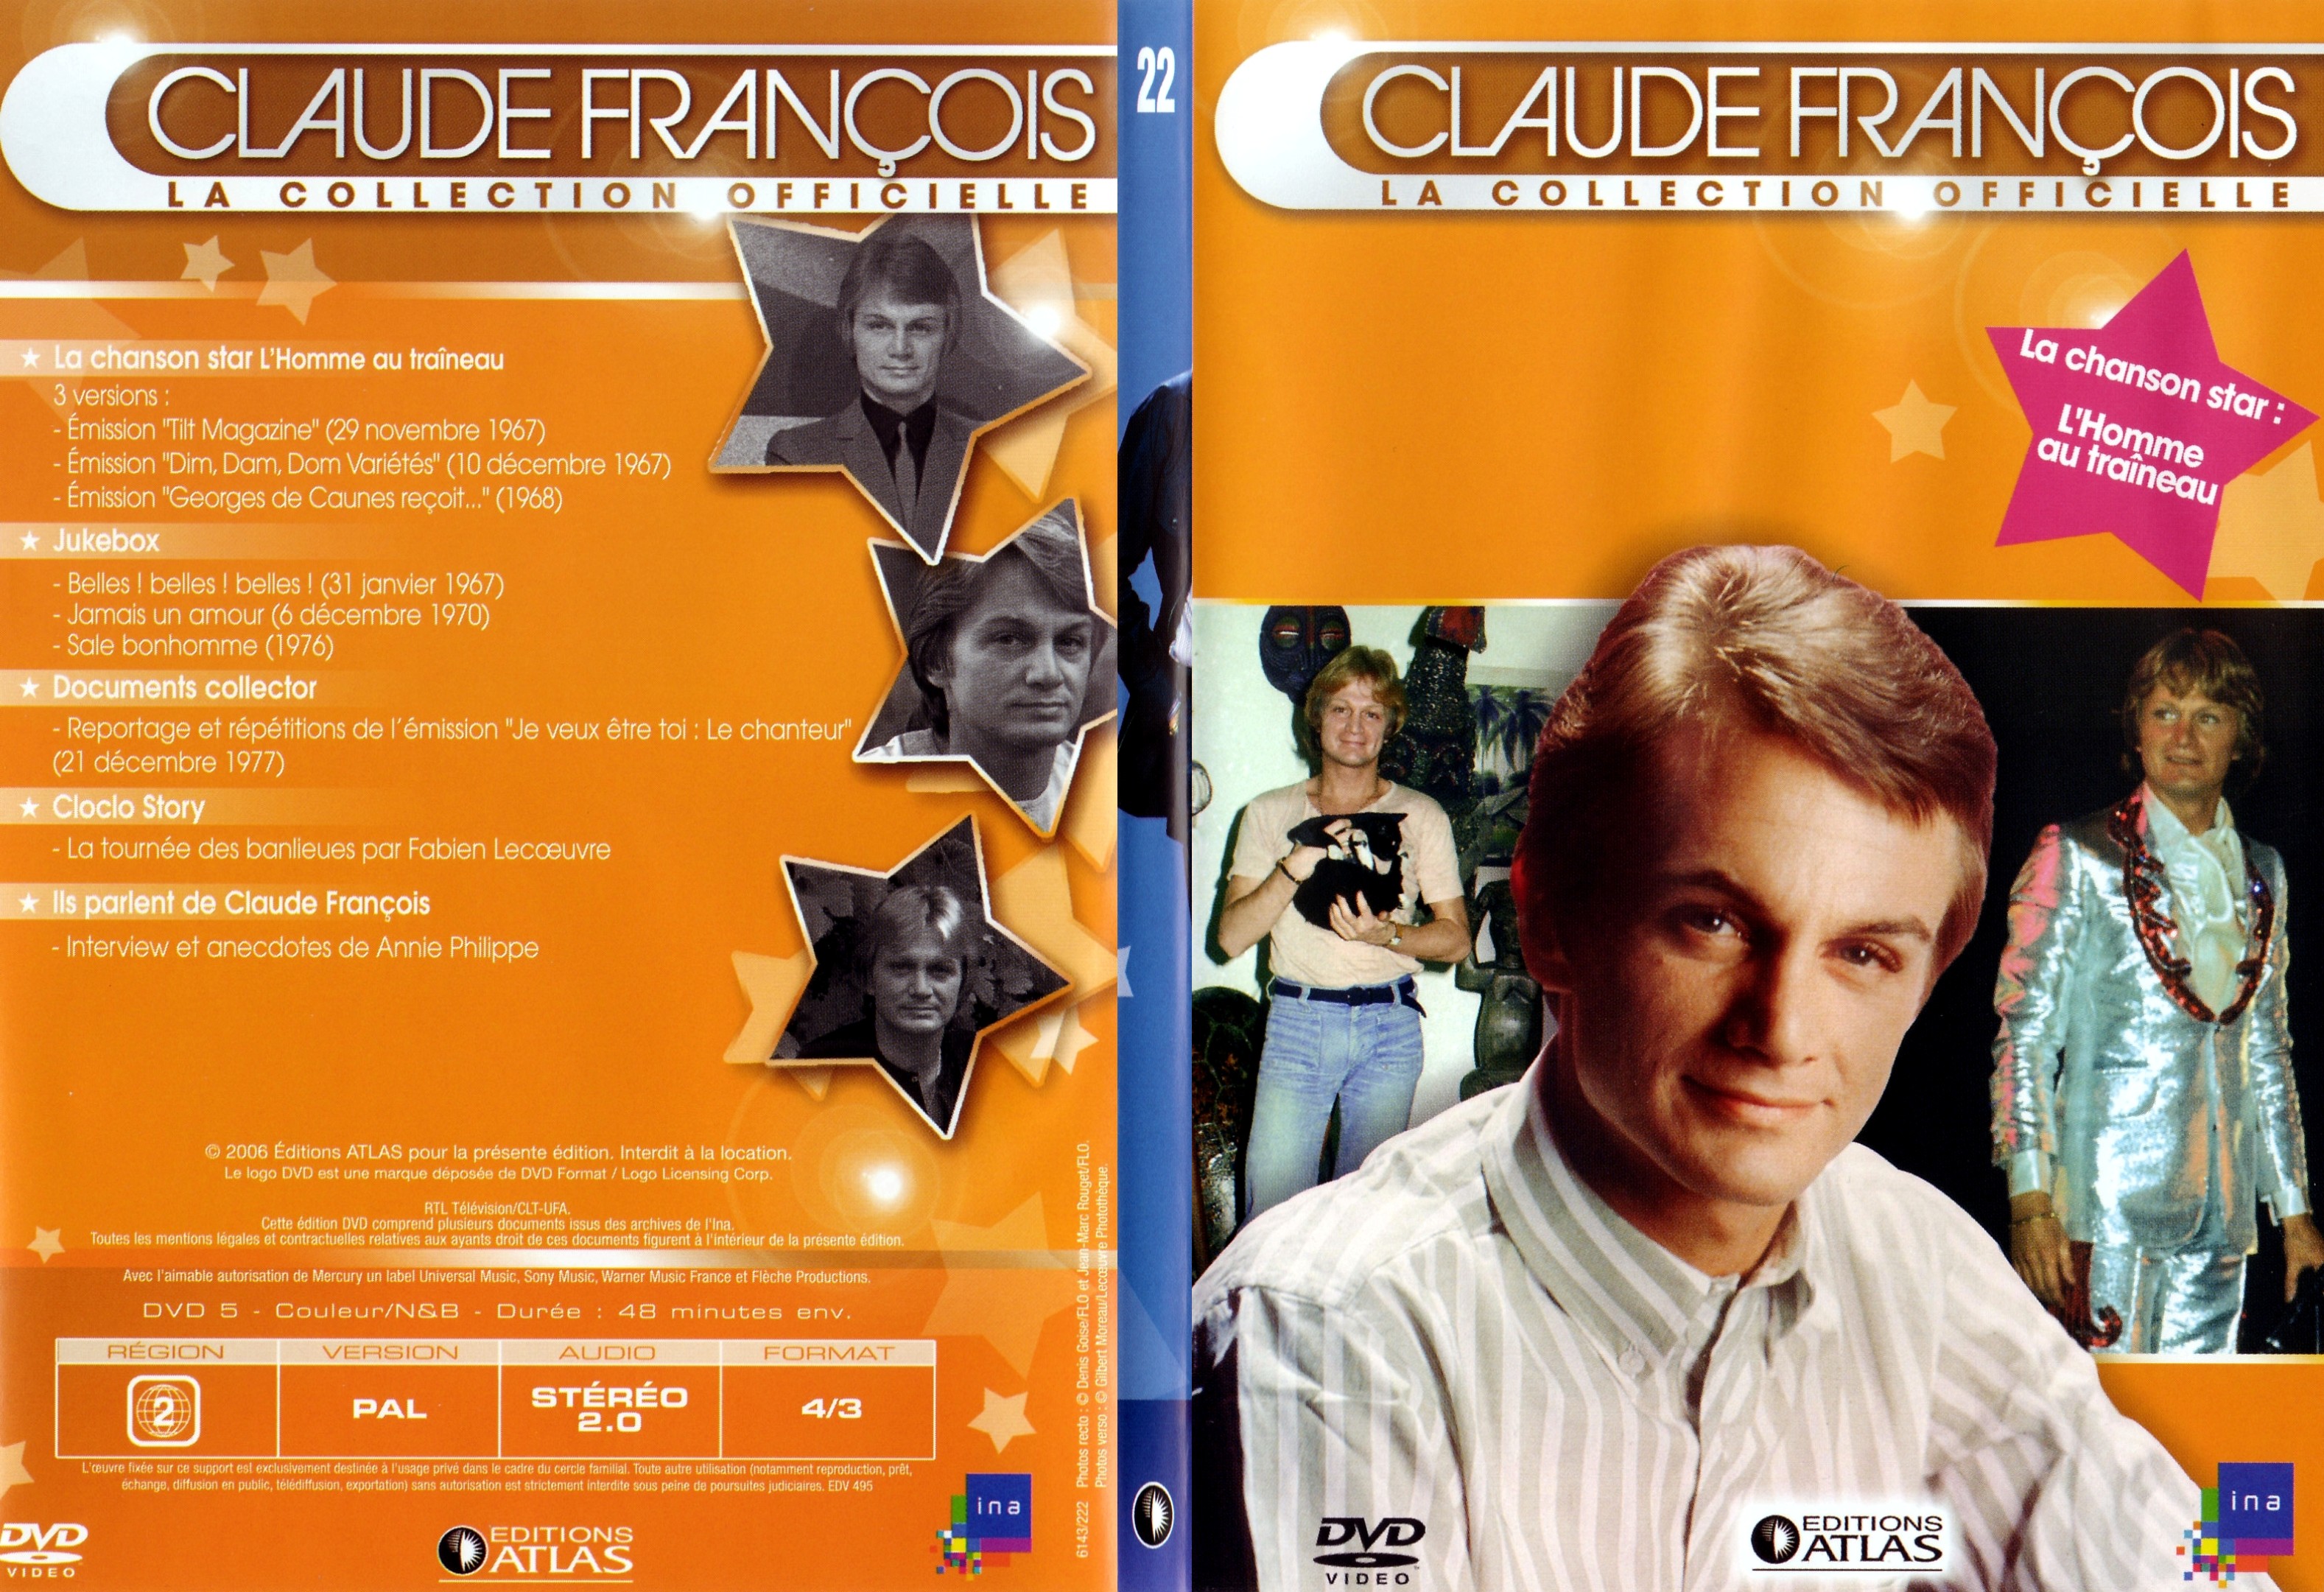 Jaquette DVD Claude francois le collection officielle vol 22 - SLIM